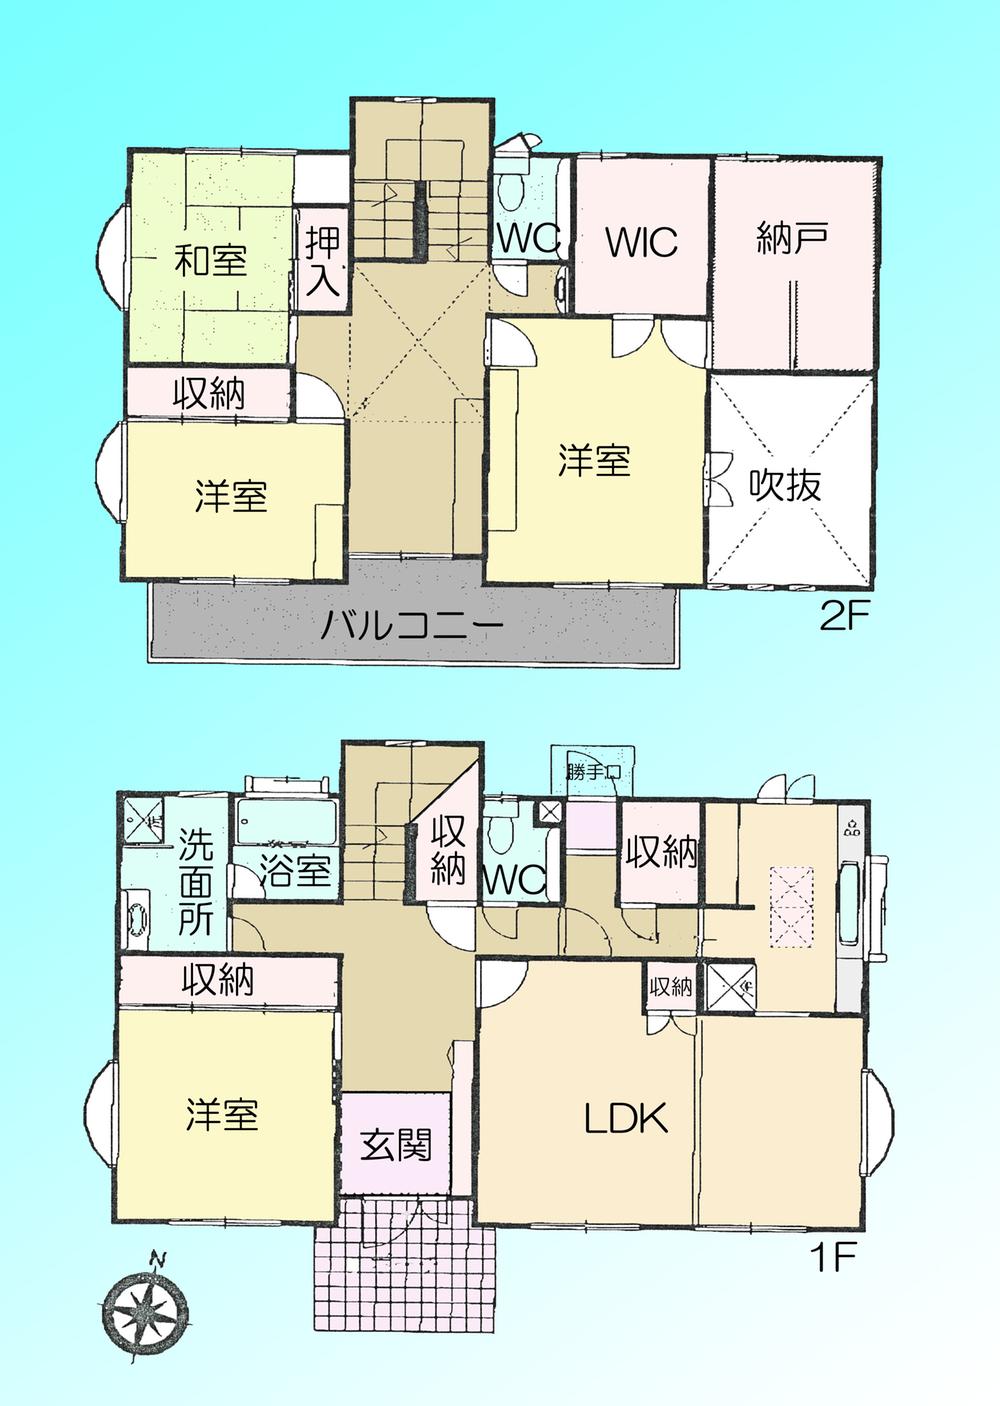 Floor plan. 59,800,000 yen, 4LDK + S (storeroom), Land area 330.59 sq m , Building area 169.96 sq m